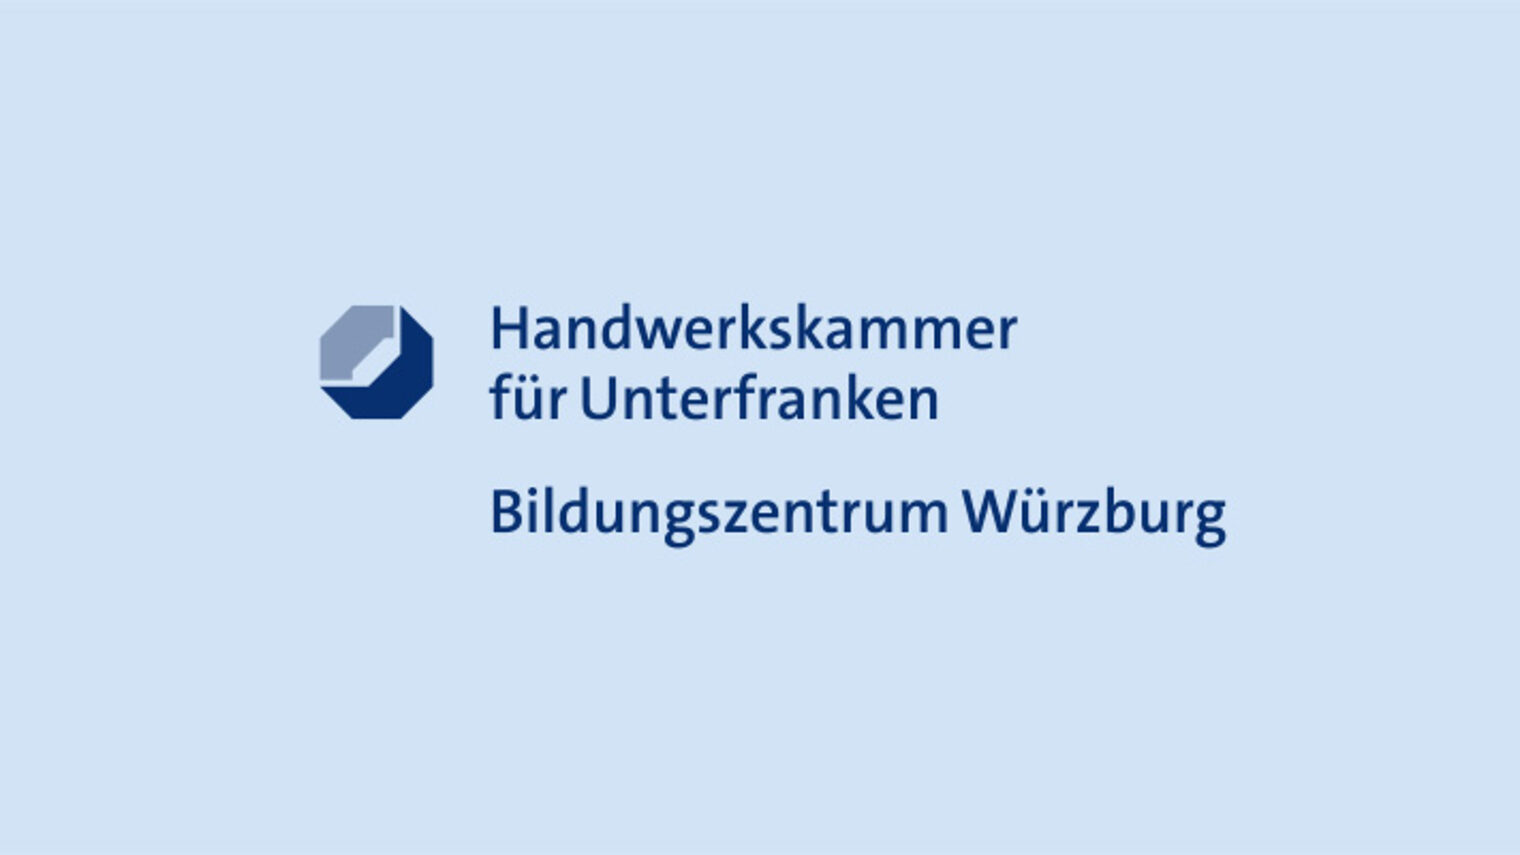 Handwerkskammer-Unterfranken-Bildungszentrum-Wuerzburg-Logo